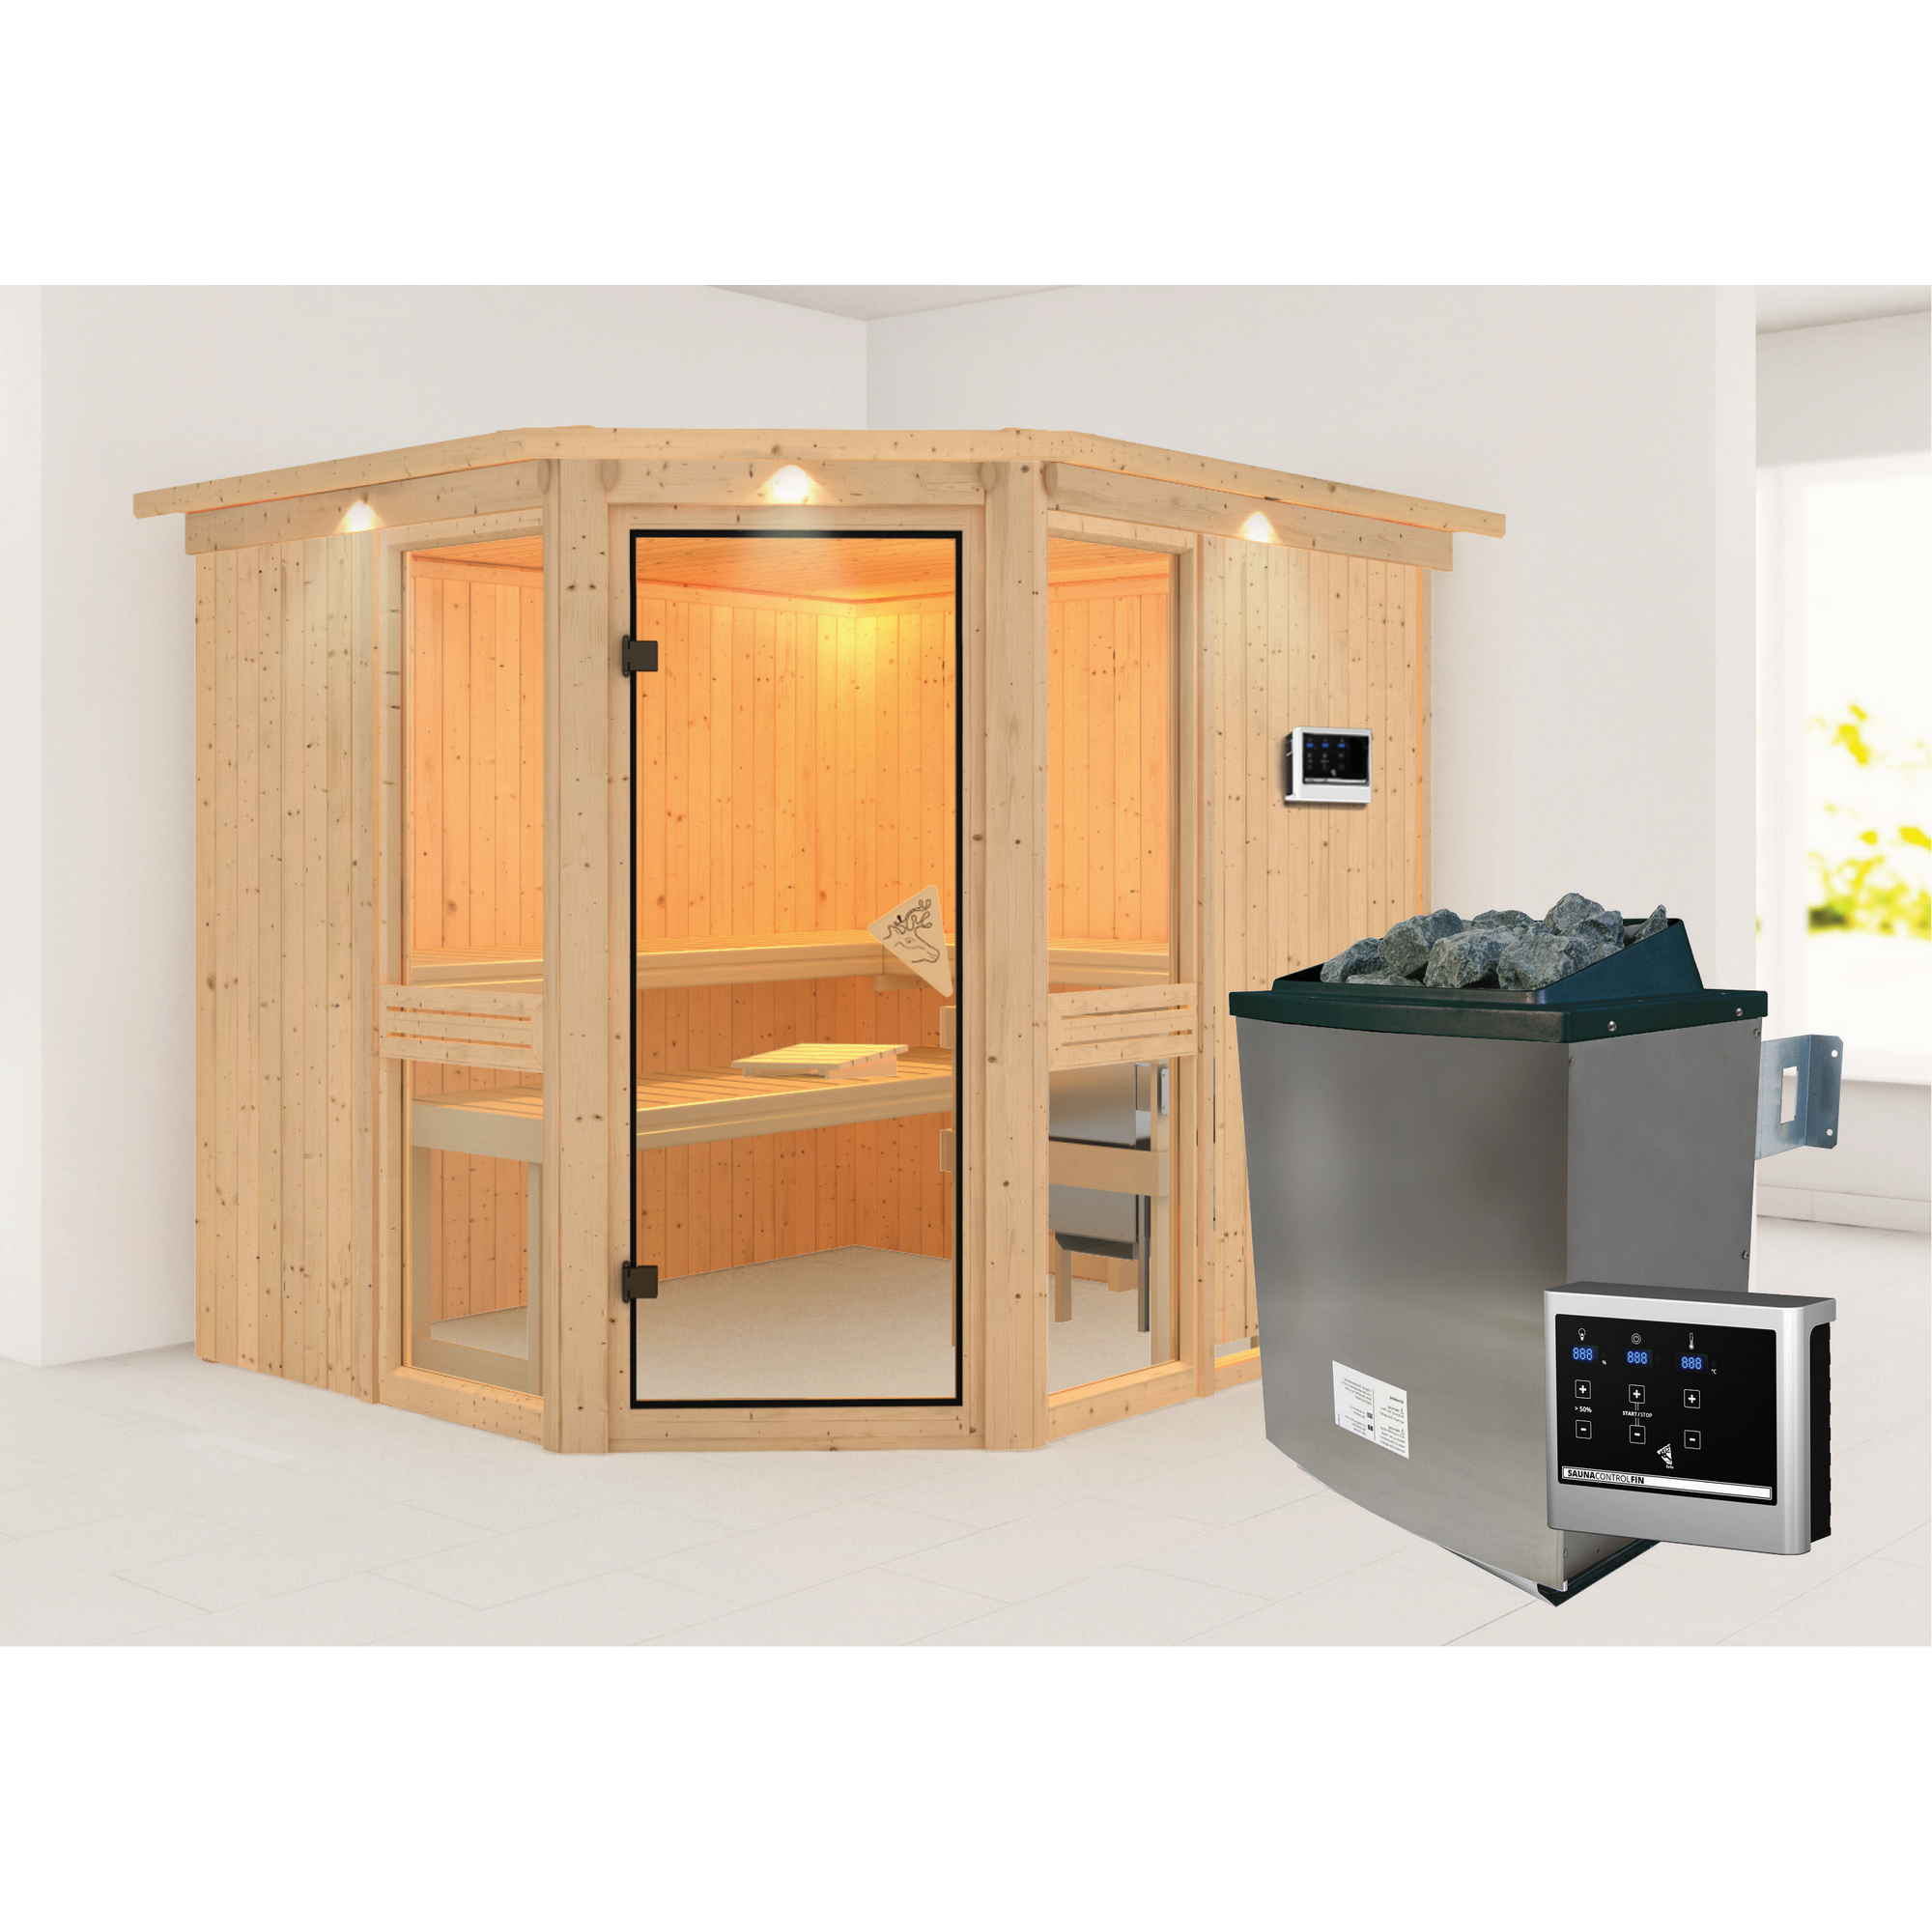 Elementsauna 'Ana 3' naturbelassen mit Kranz und bronzierter Tür 9 kW Ofen Edelstahl externe Steuerung Easy 245 x 210 x 202 cm + product picture